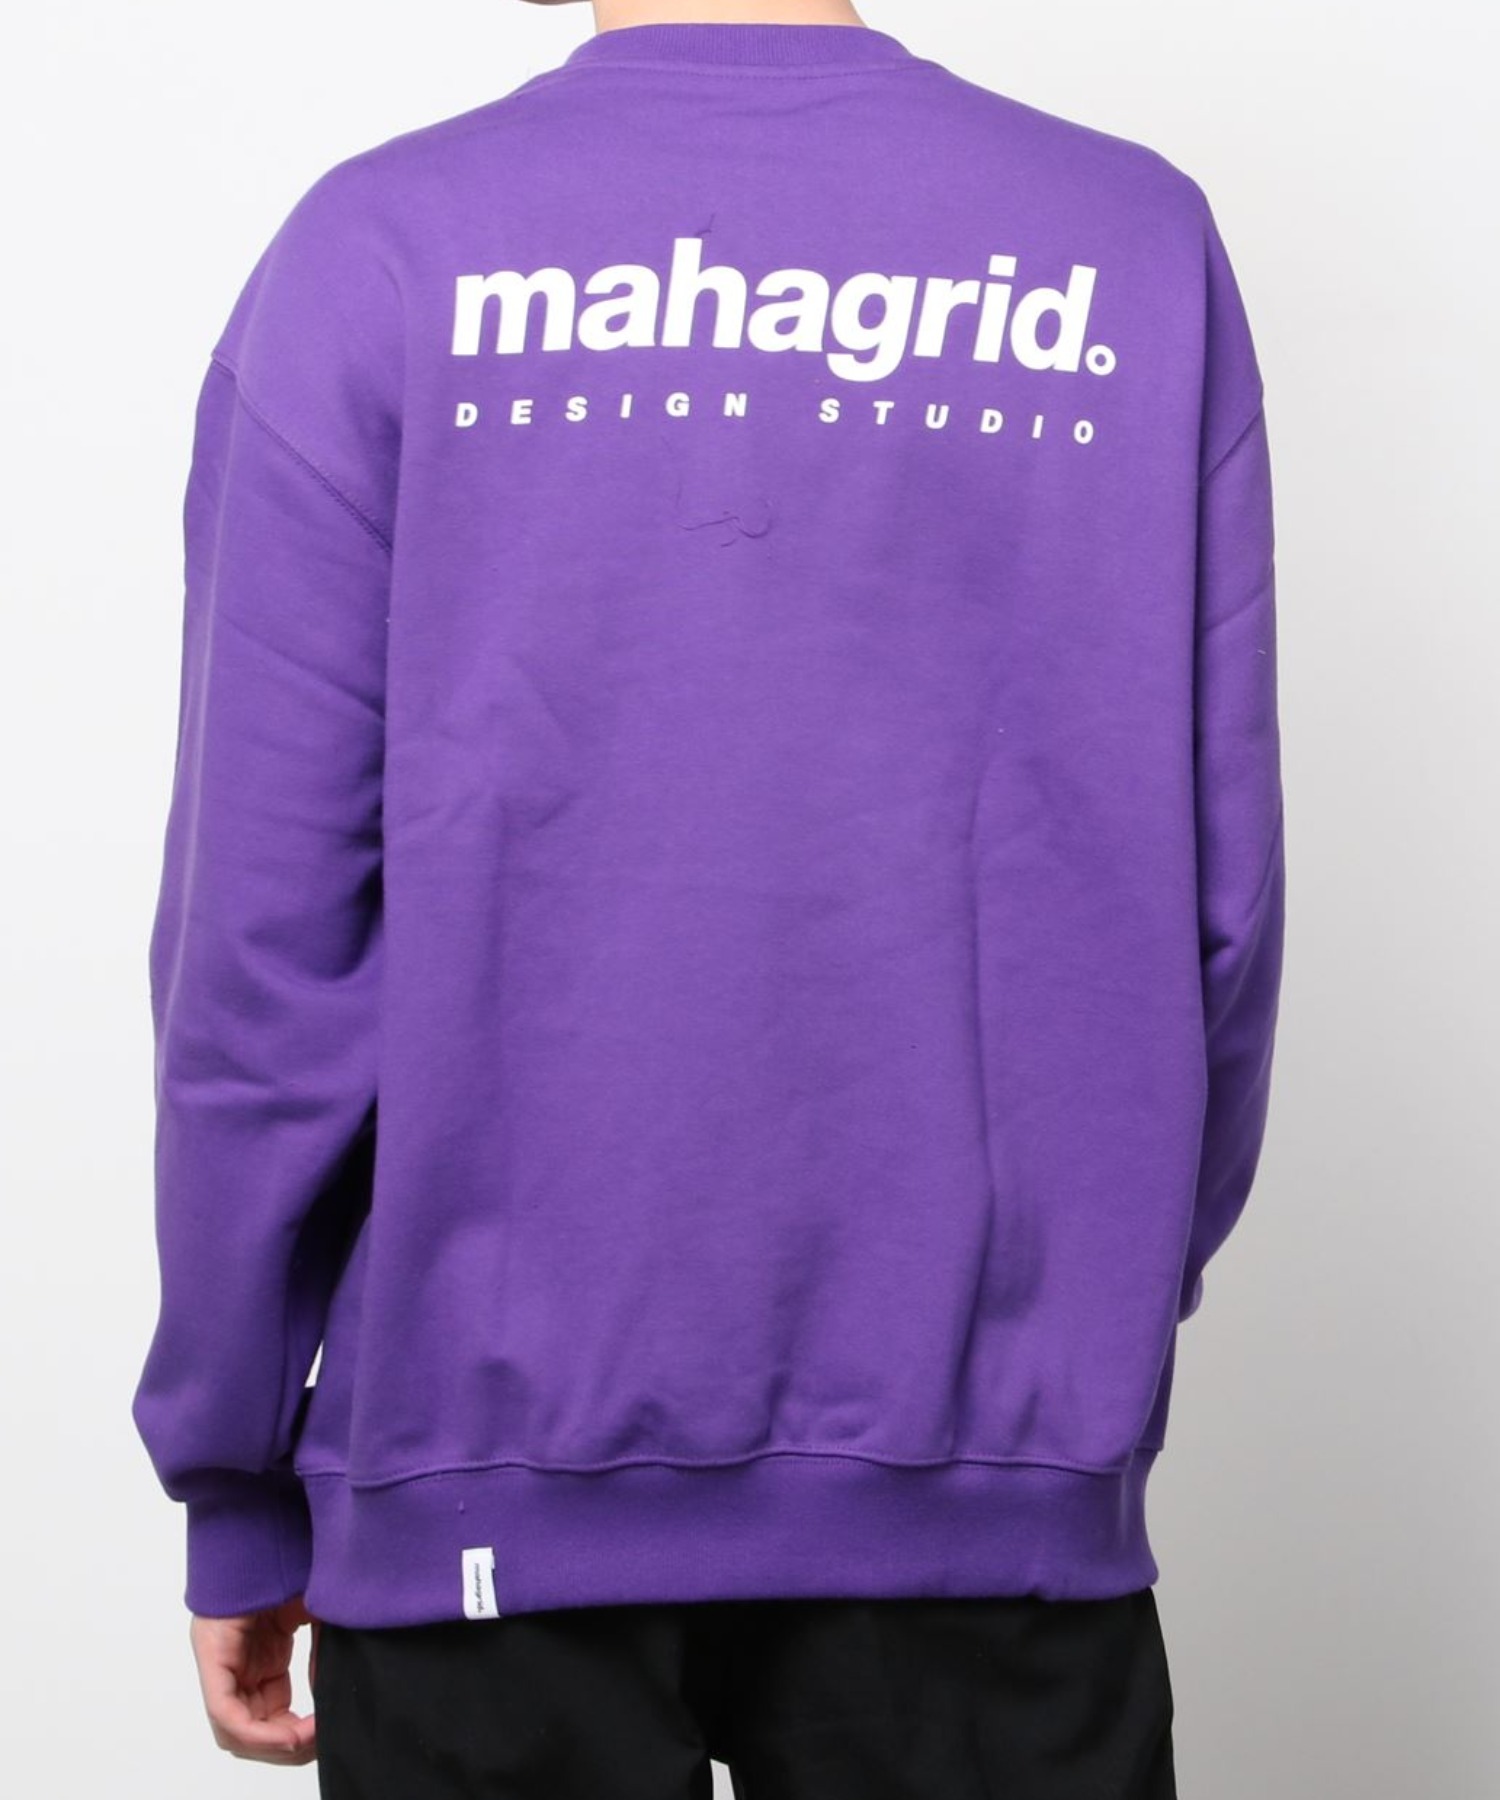 『mahagrid/マハグリッド』ORIGIN LOGO CREWNECK/オリジンロゴ クルーネック スウェットシャツ ロングスリーブ  長袖